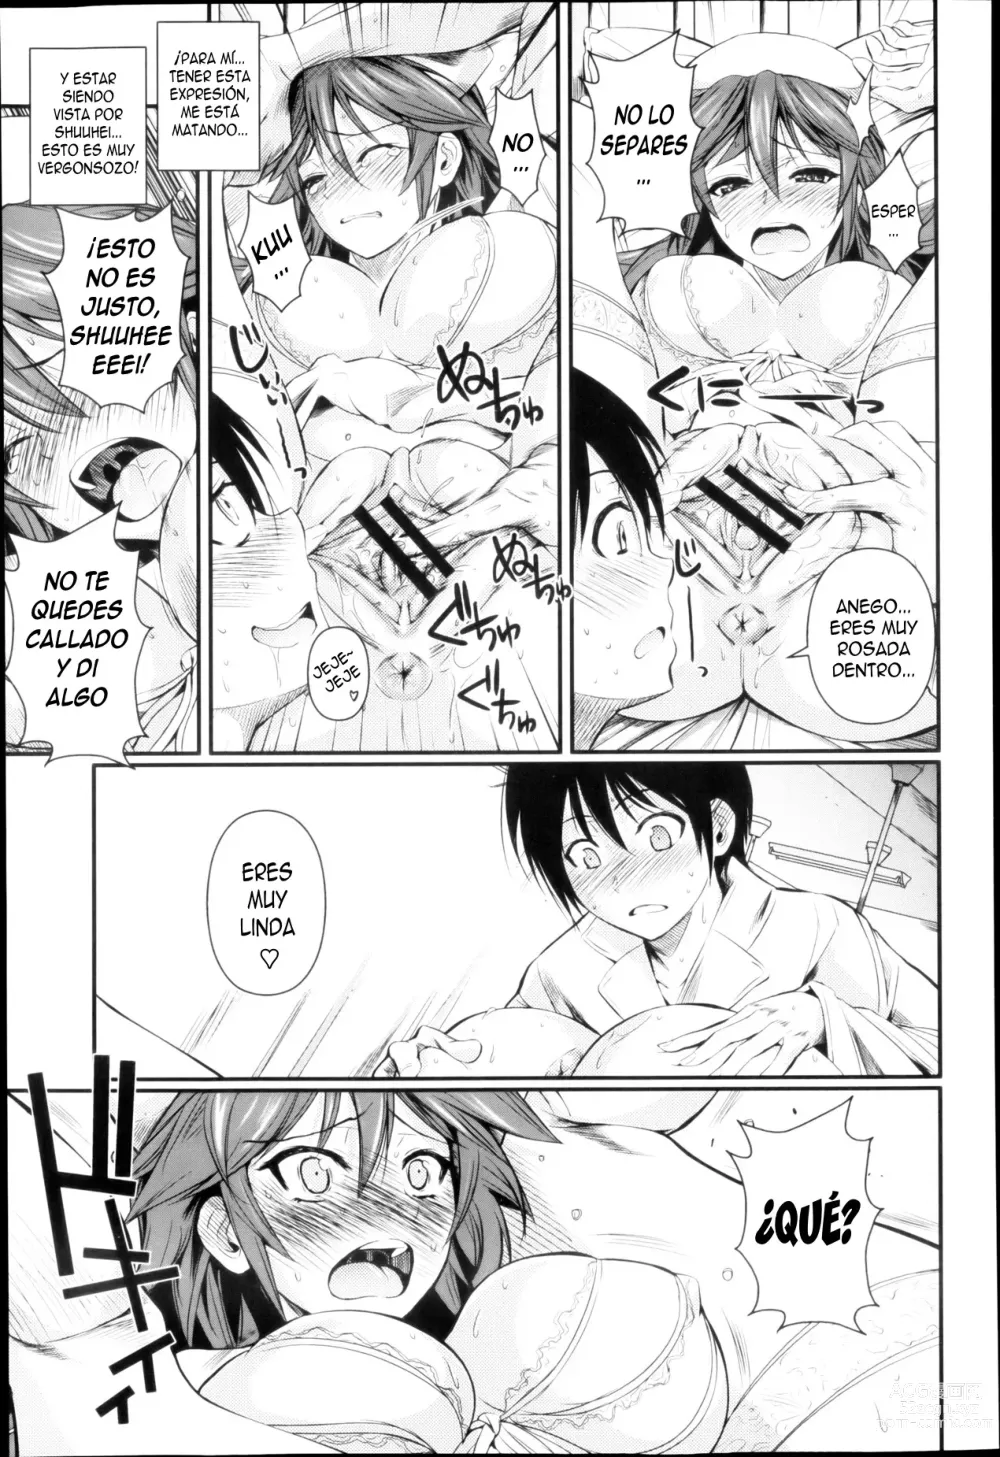 Page 11 of manga Kis An Ange Ane